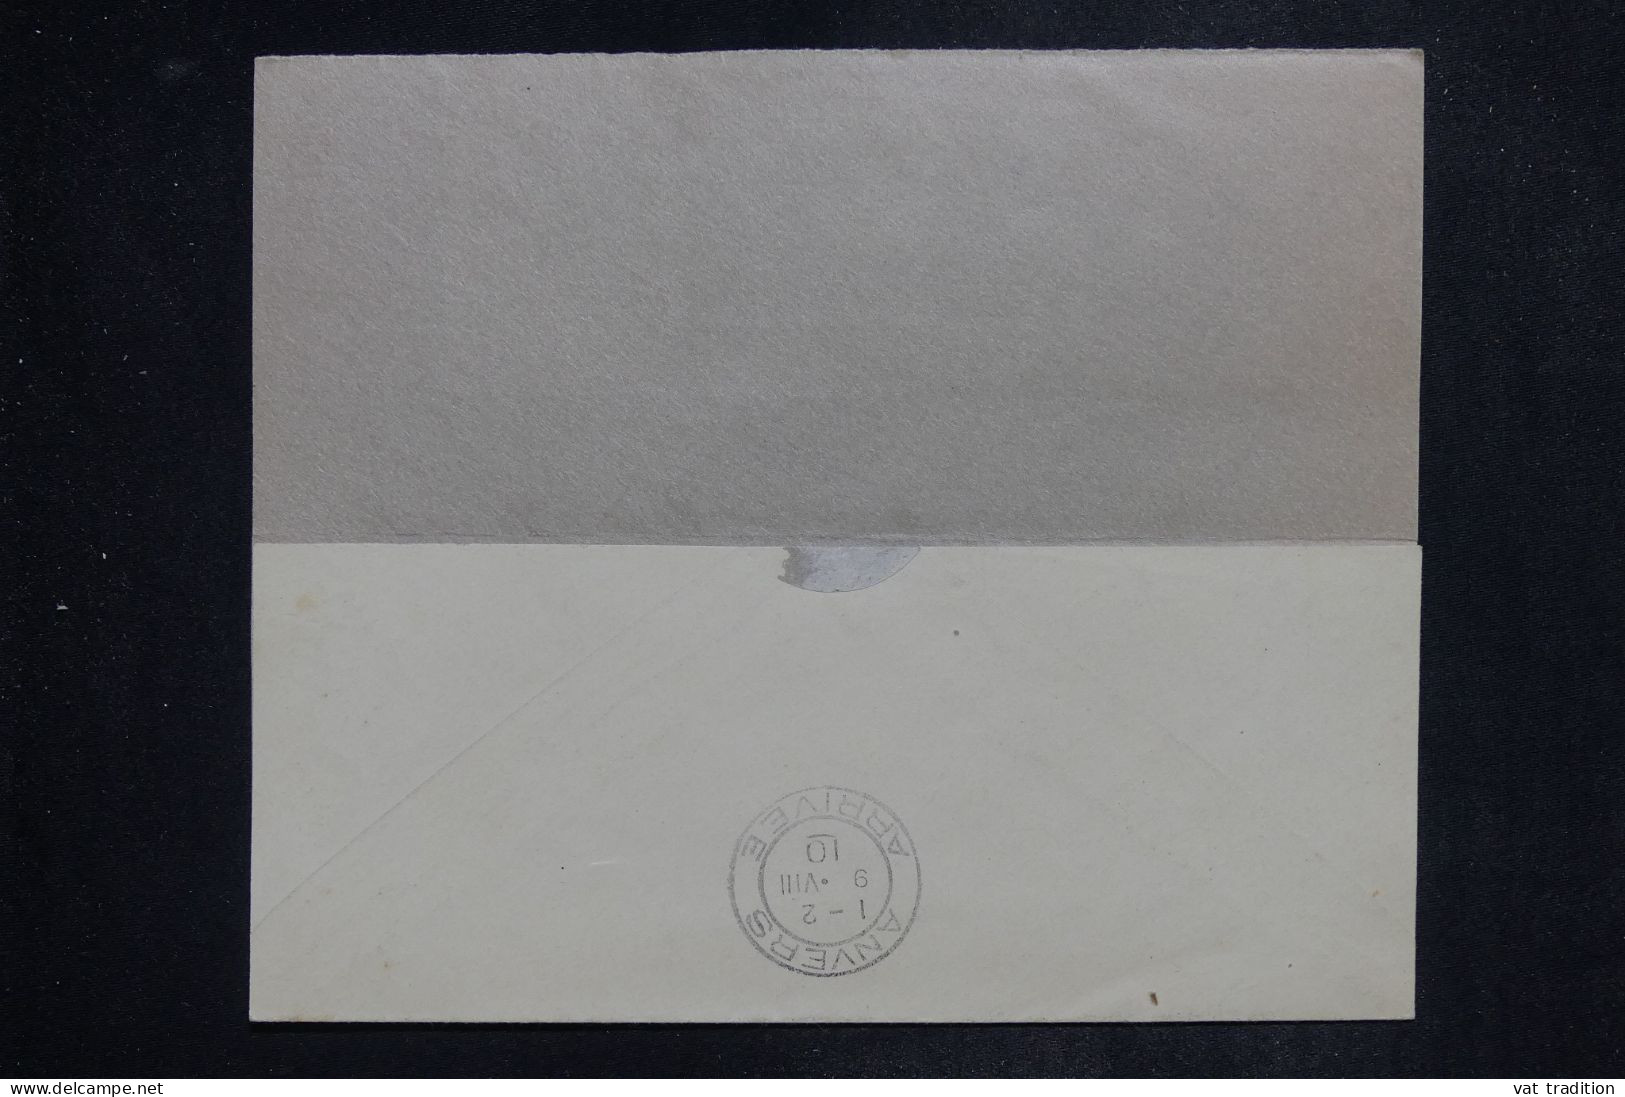 BELGIQUE - Entier Postal + Compléments De Bruxelles Pour Anvers En 1910 - L 151021 - Briefe